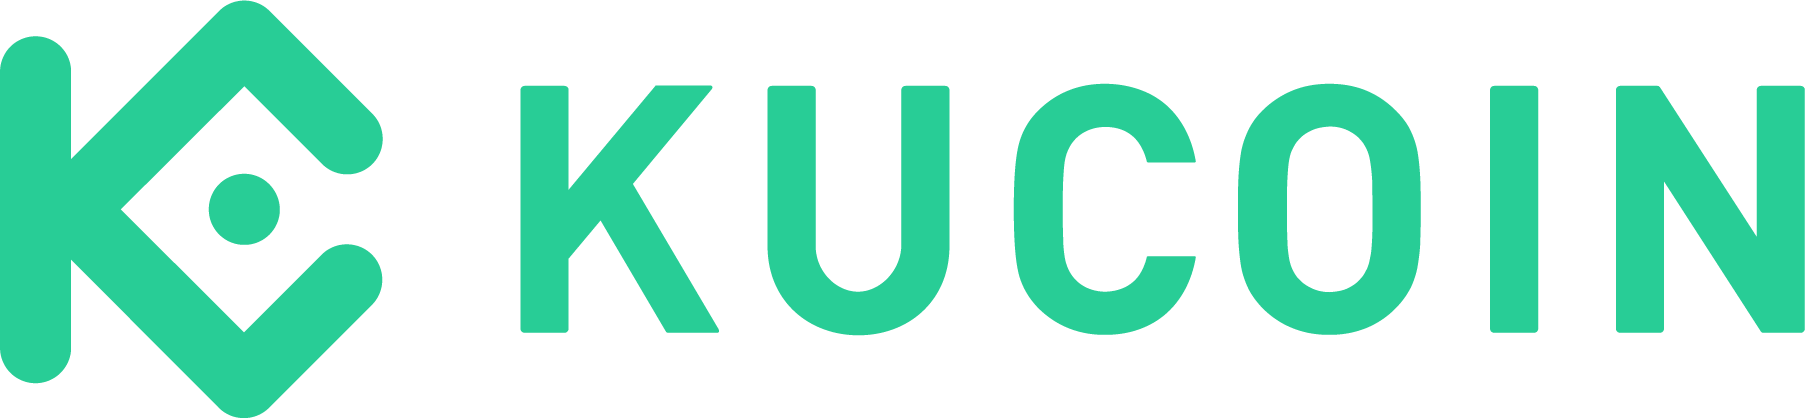 Kucoin logo